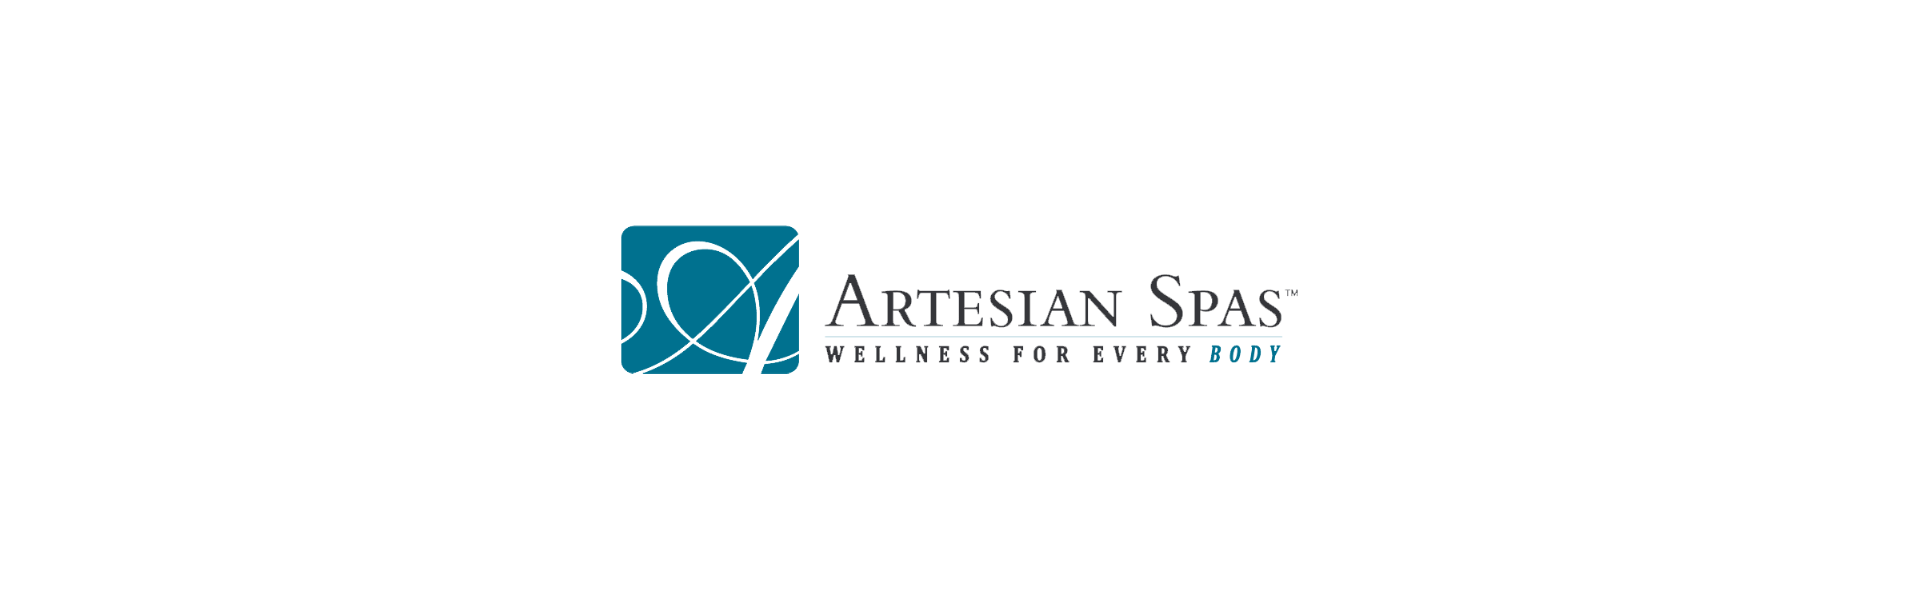 artesian-spas-title-logo3